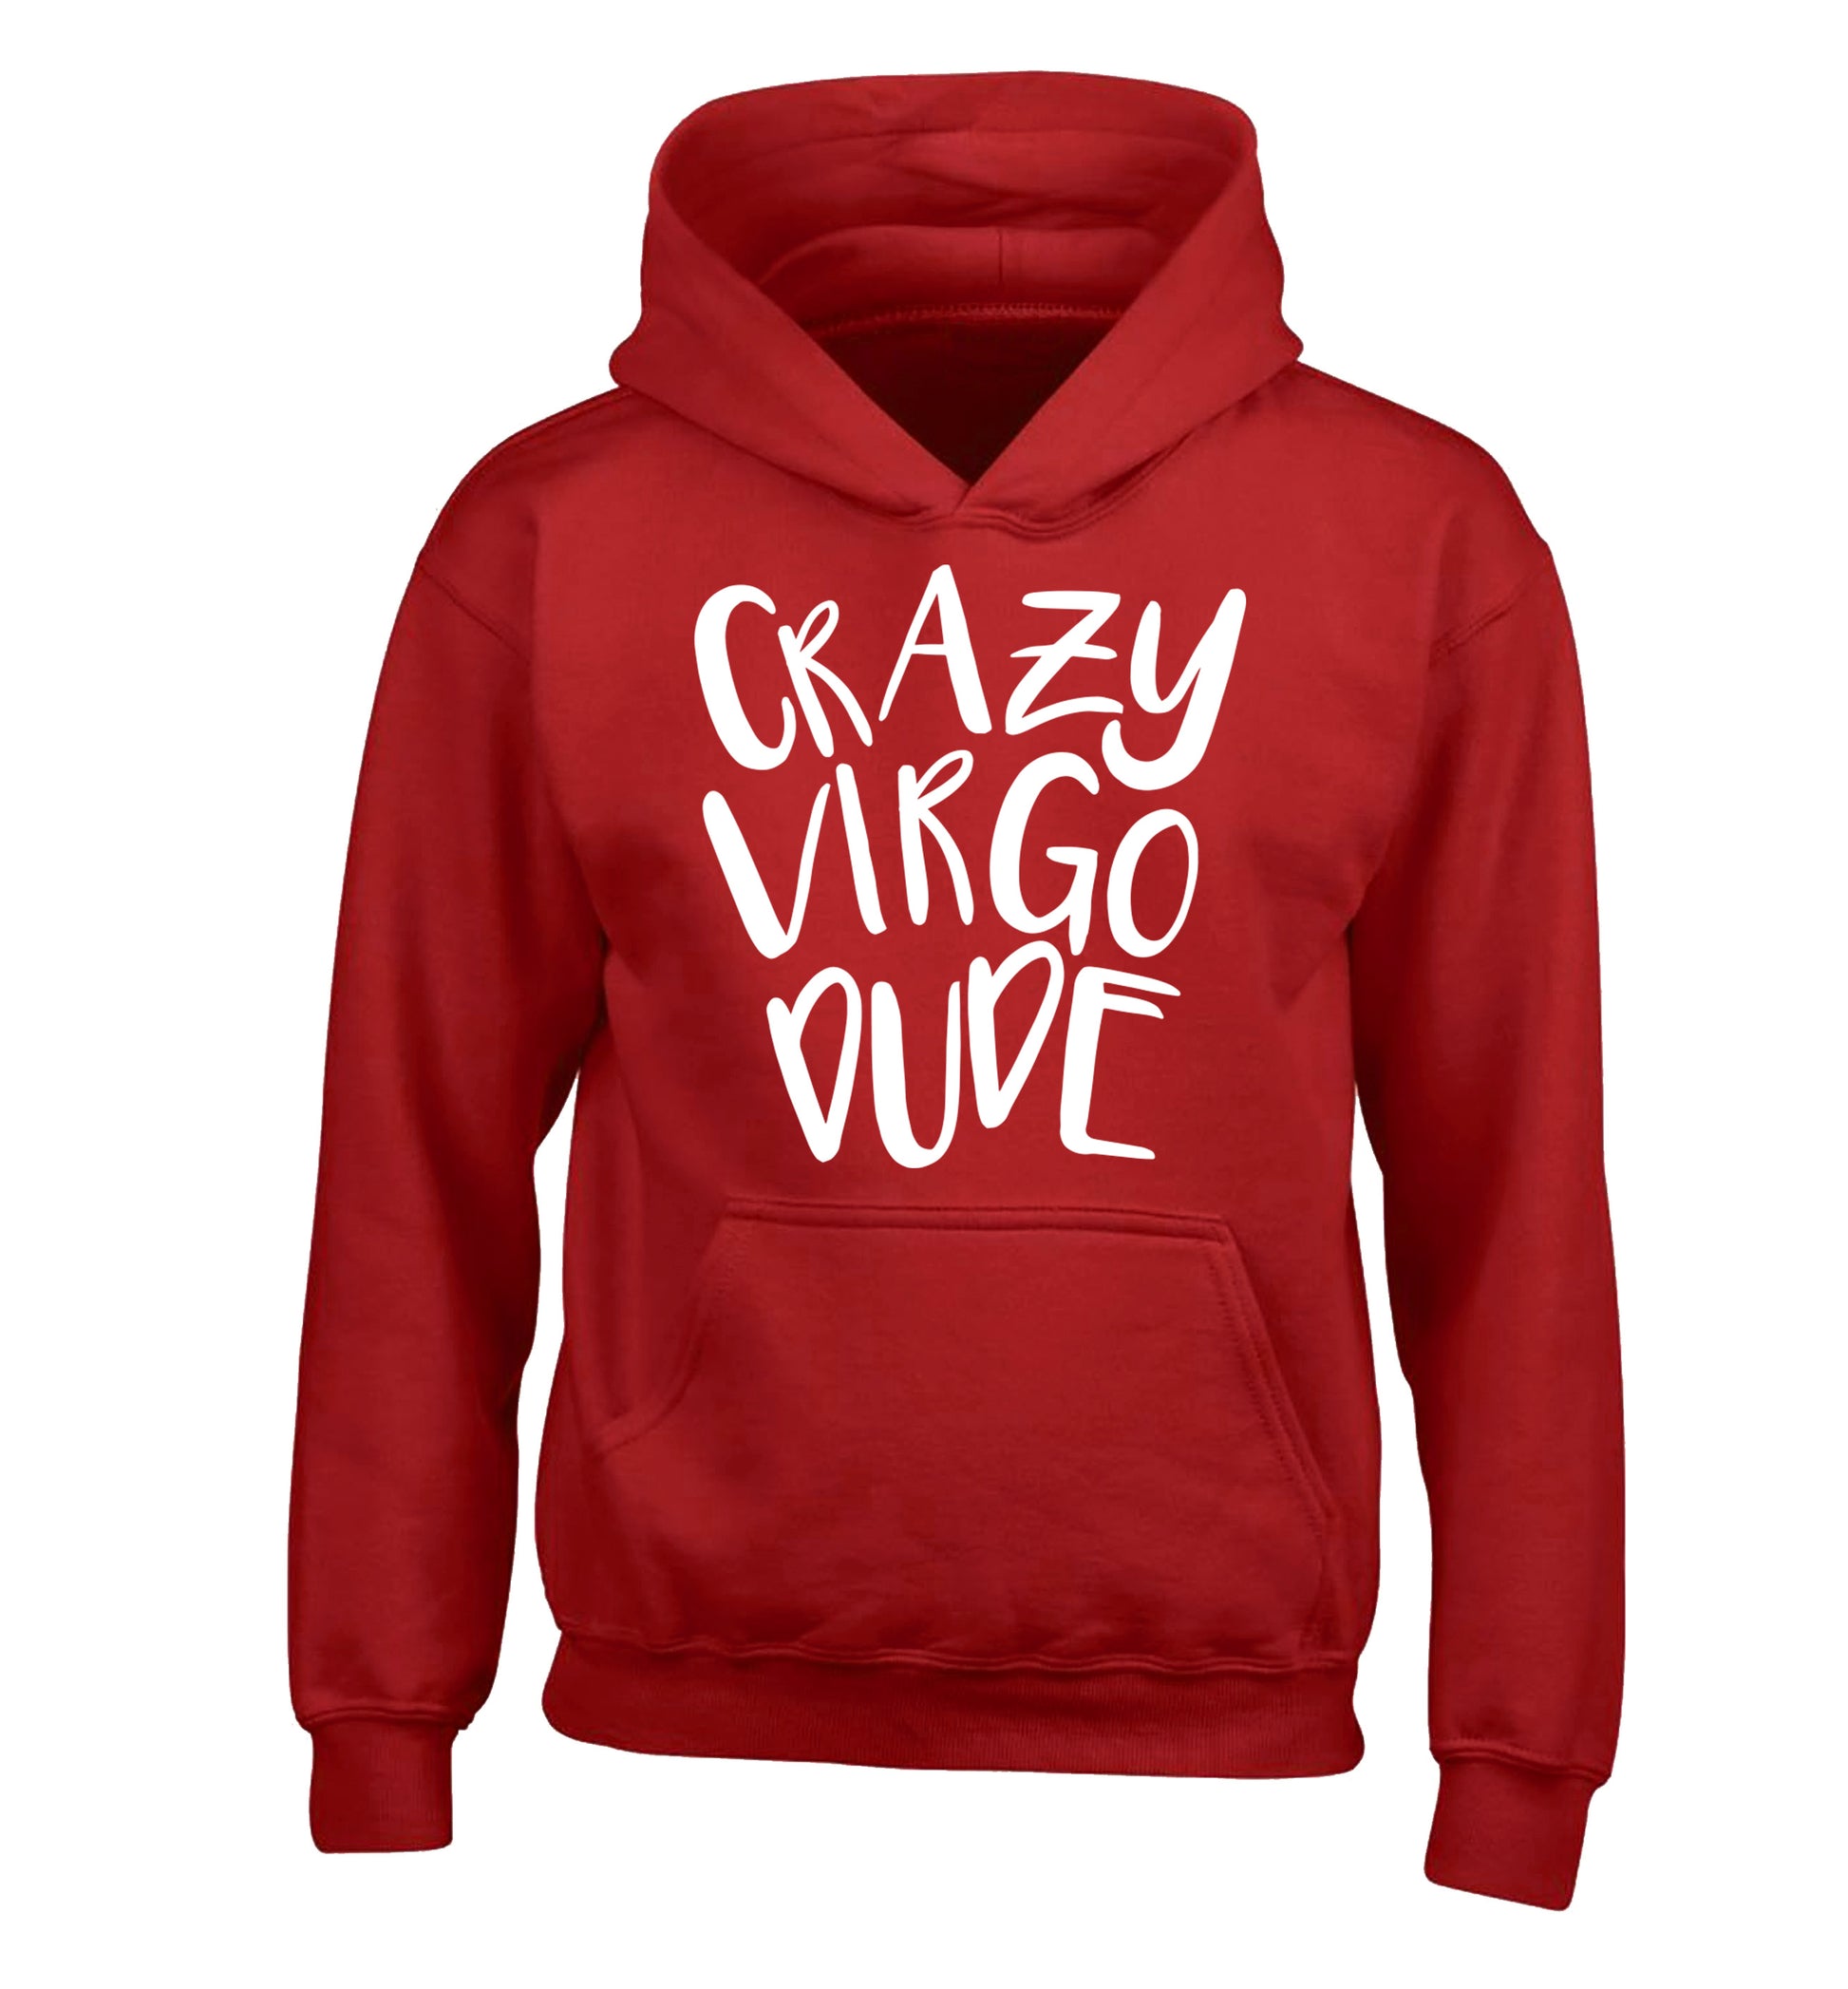 Crazy virgo dude children's red hoodie 12-13 Years